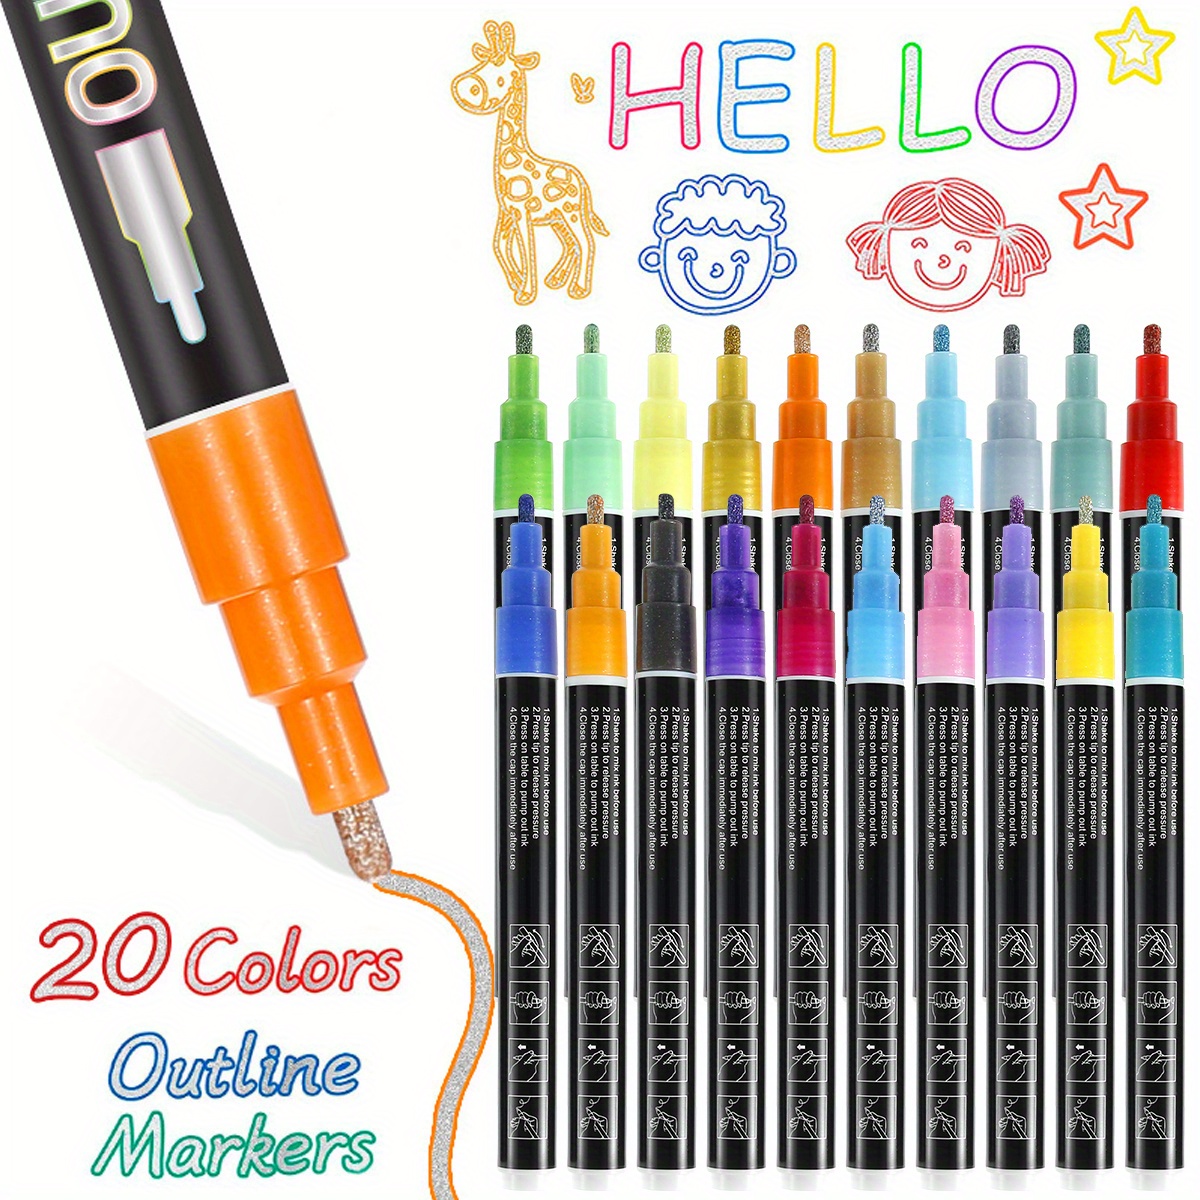 Tavolozza Fine Arts Tavolozza 30 Color Chalk Markers for Blackboards - Bold  Color Dry Erase Marker Pens - Chalk Markers for Chalkboards Signs